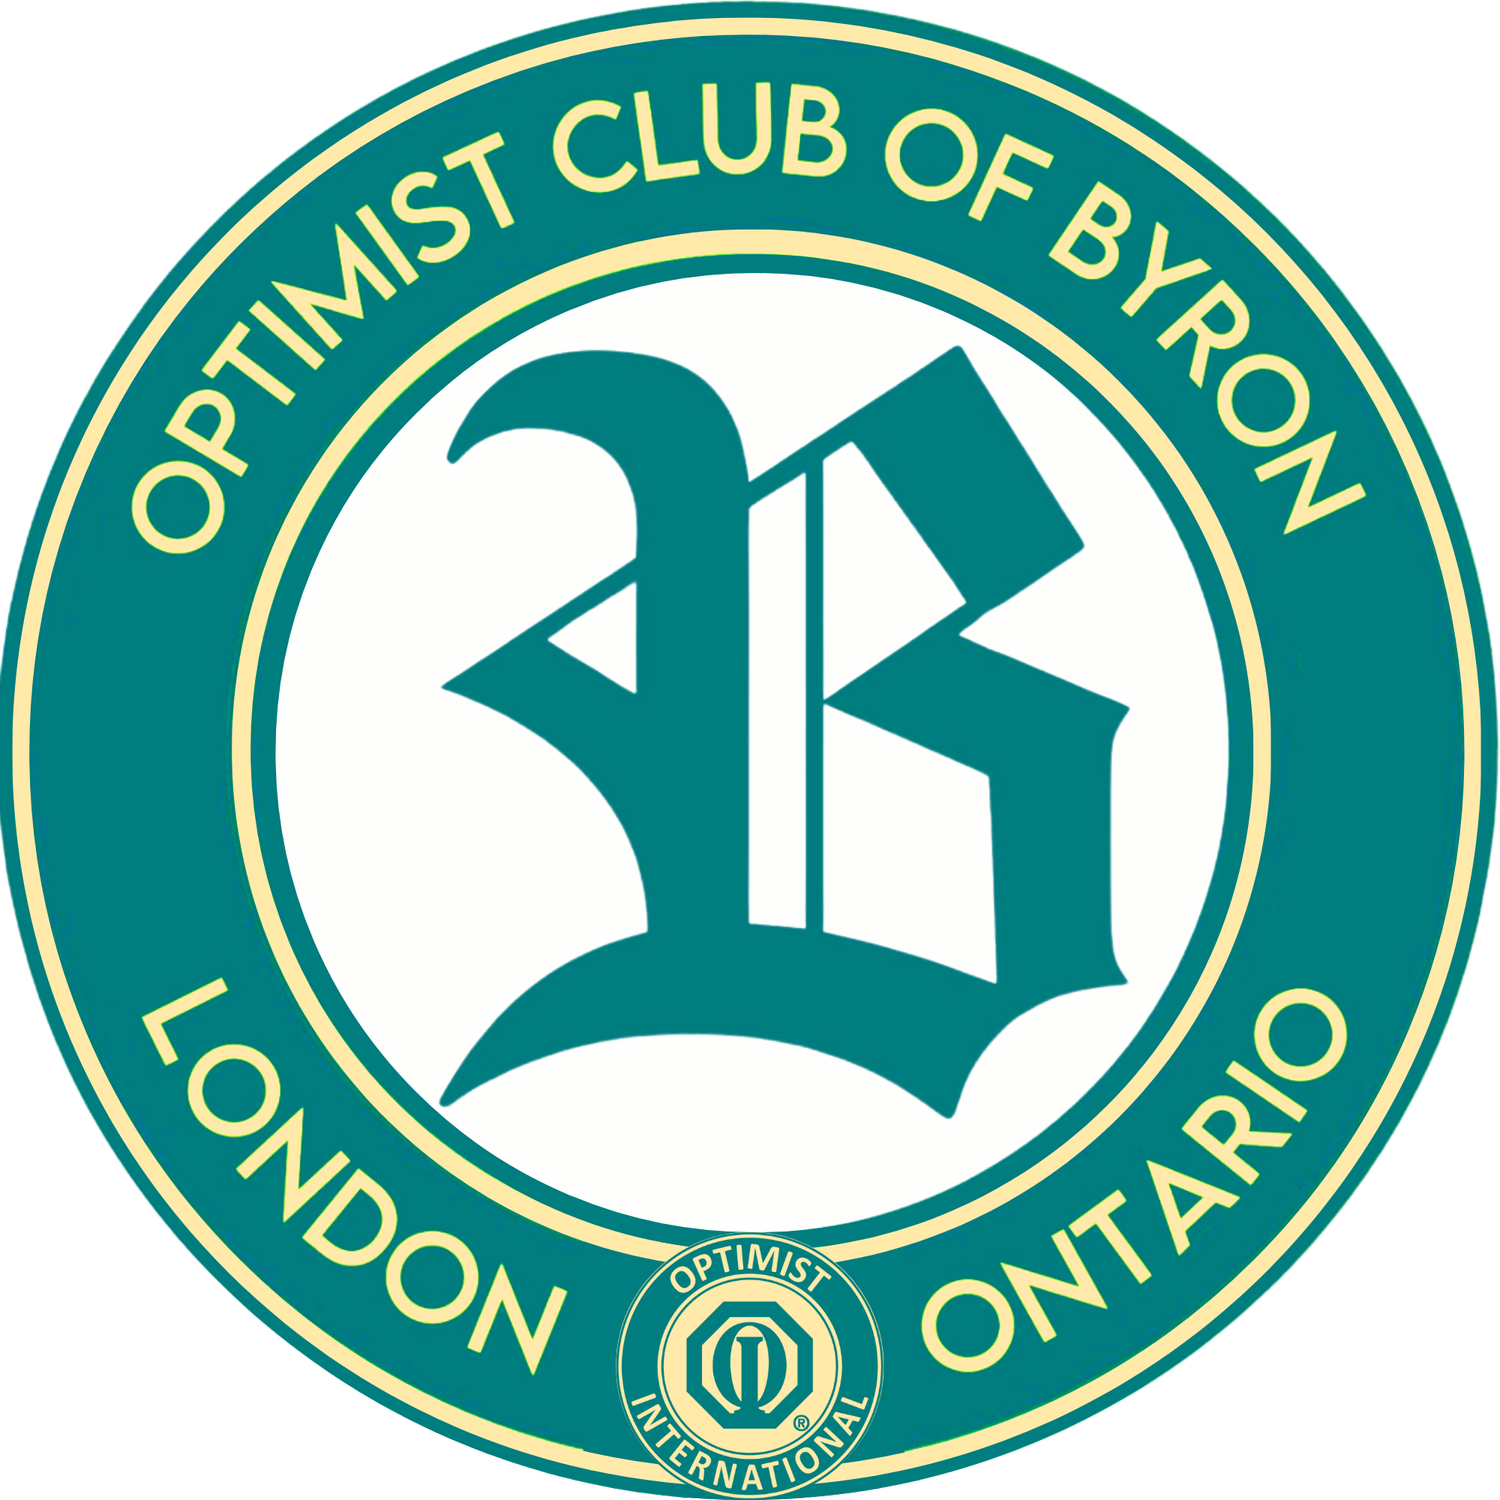 OPTIMIST CLUB OF BYRON